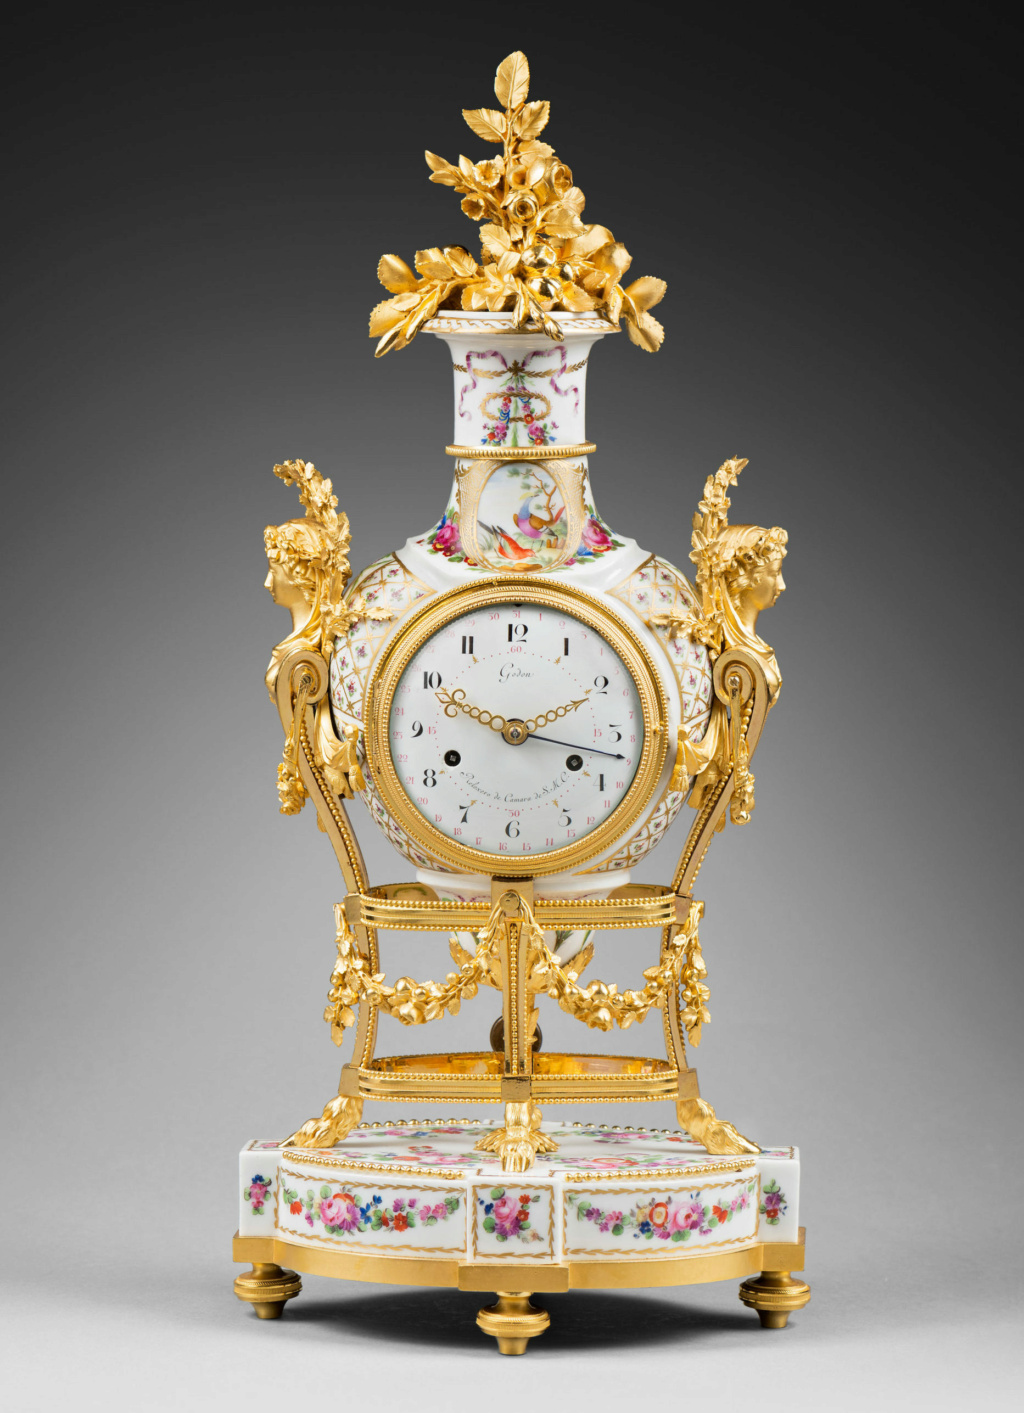 Pendules et horloges de Marie-Antoinette - Page 4 Pendul19